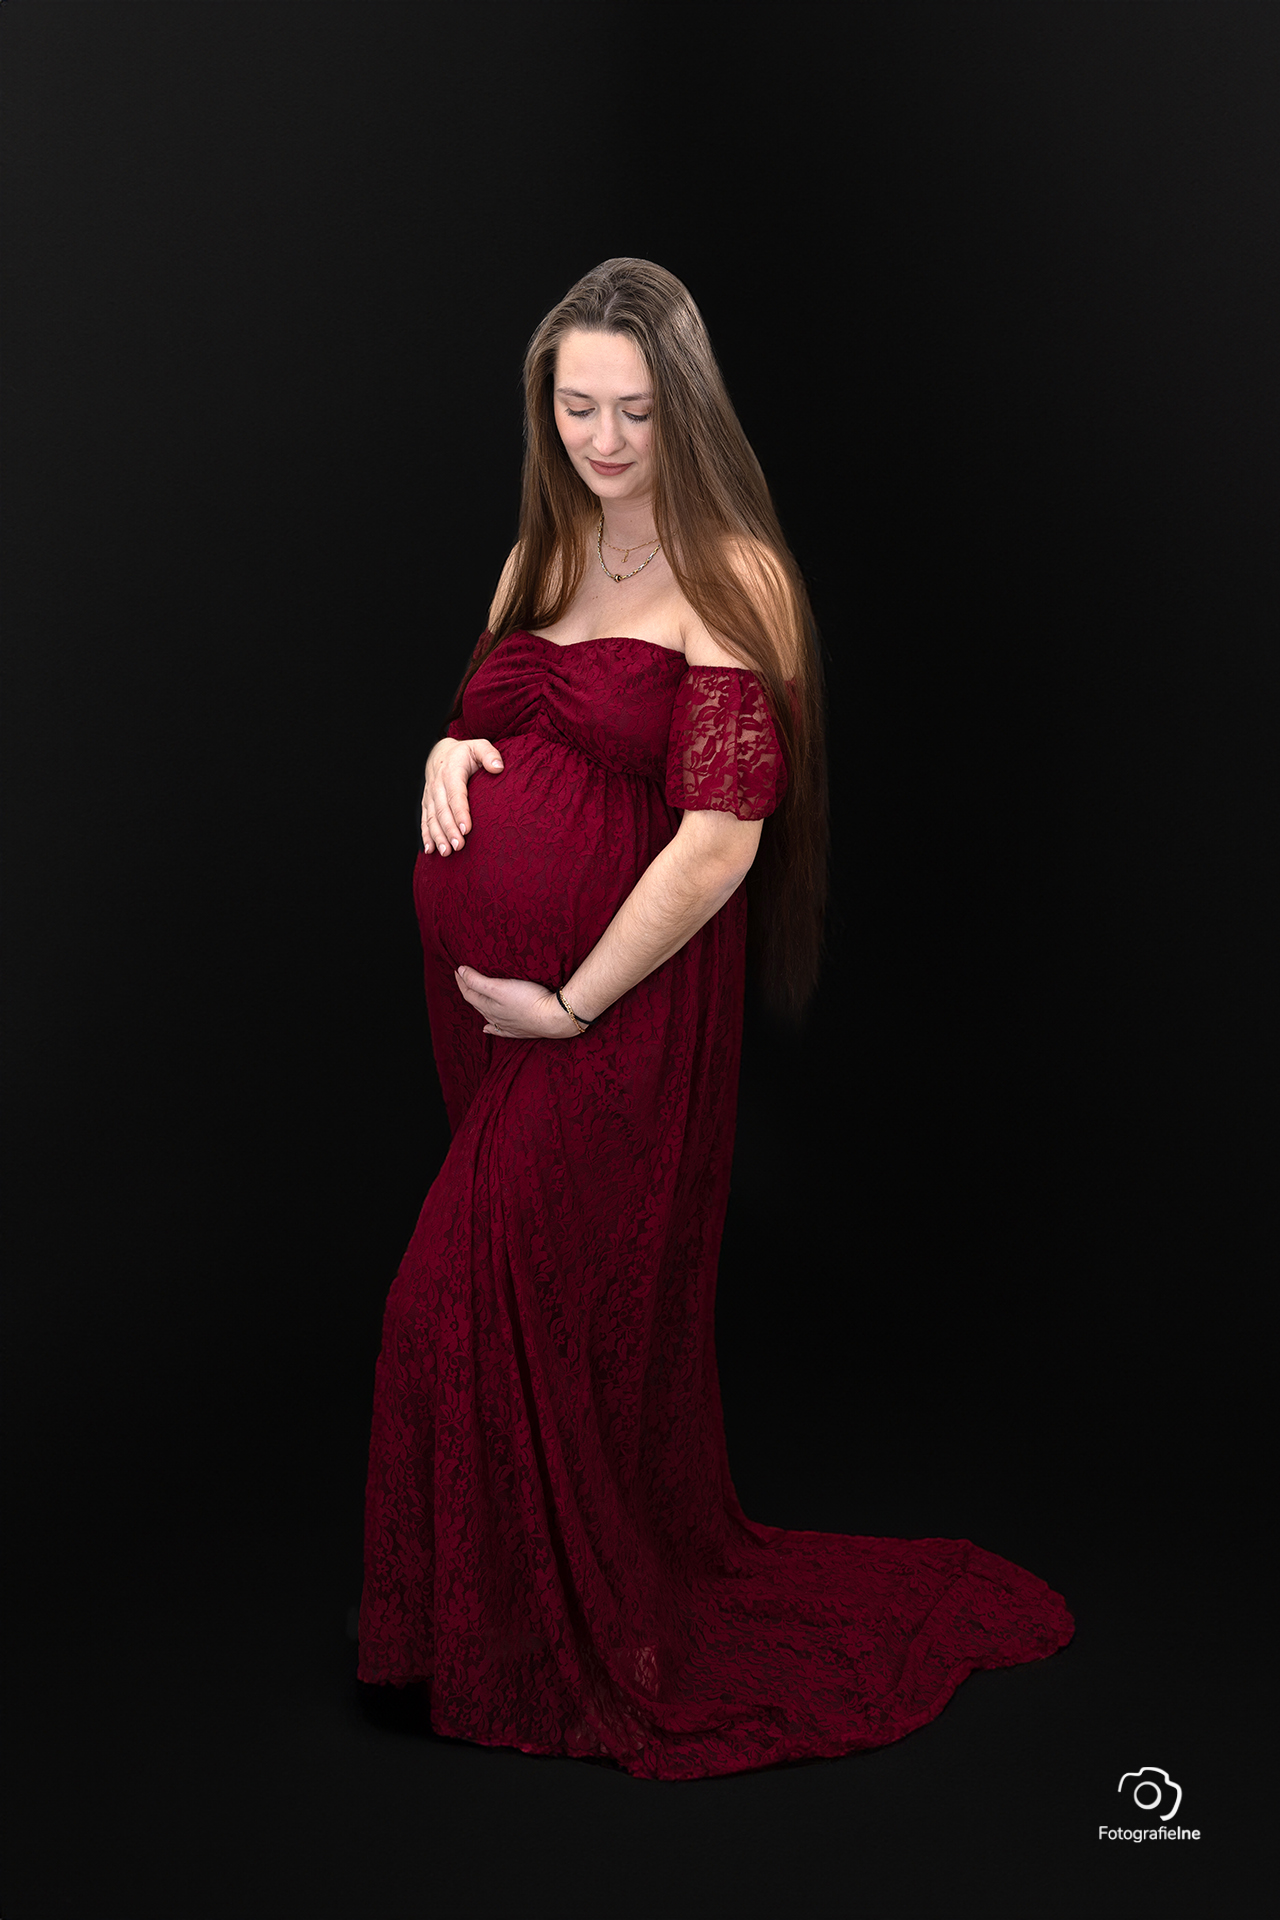 Fotografie Ine van Boerdonk Fotograaf Boekel newborn zwangerschap zwarte achtergrond jurk